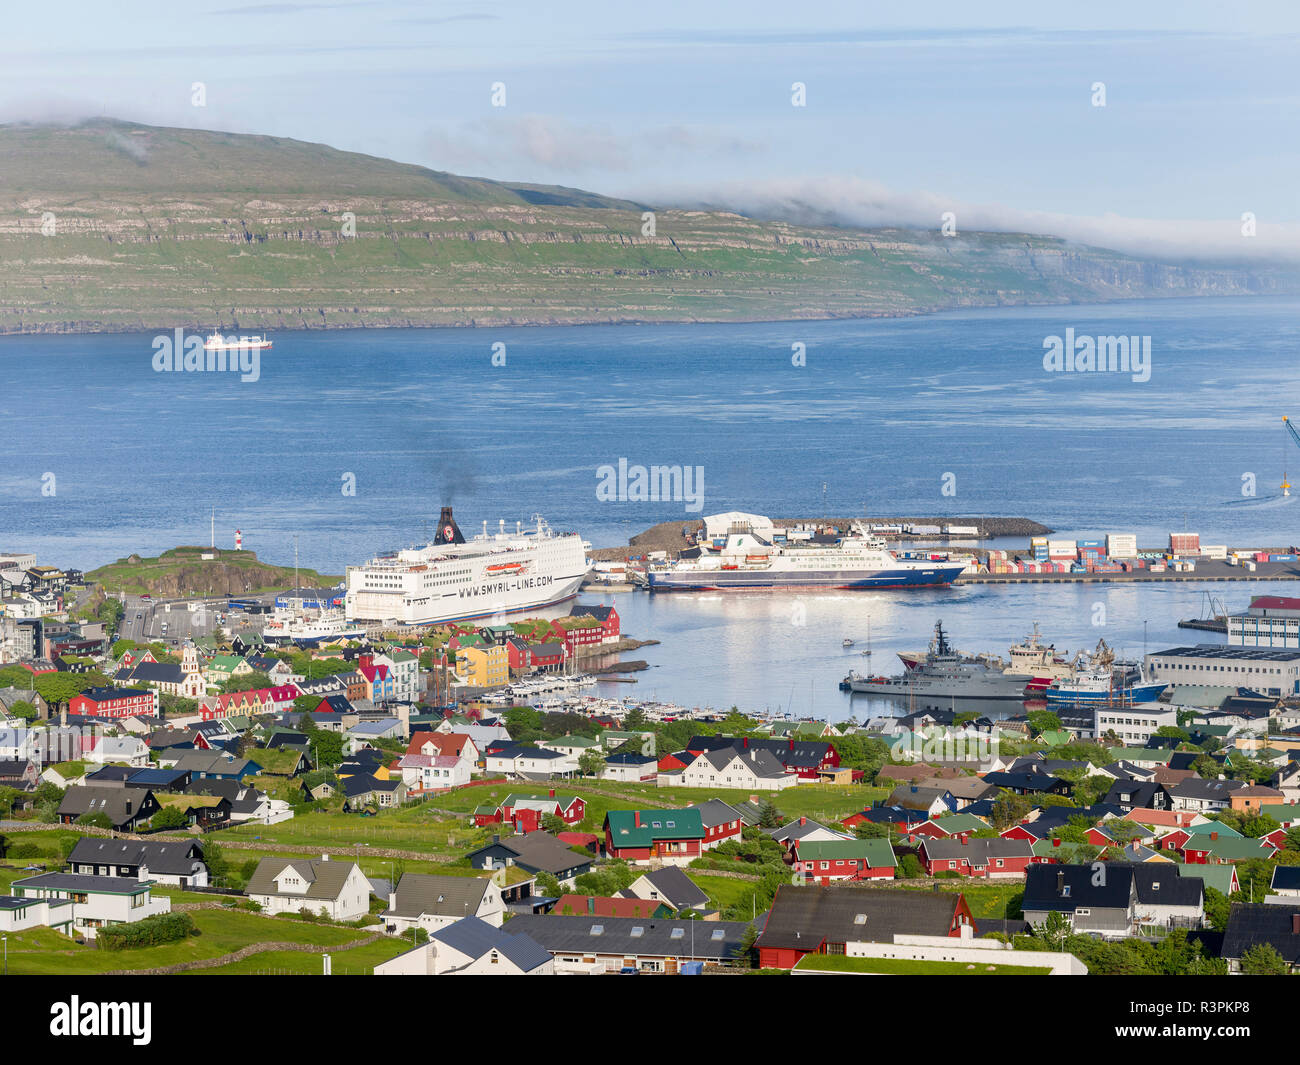 Fähre in den Hafen von Torshavn (thorshavn) Die Hauptstadt der Färöer auf der Insel Streymoy im Nordatlantik. Dänemark, Färöer Inseln Stockfoto